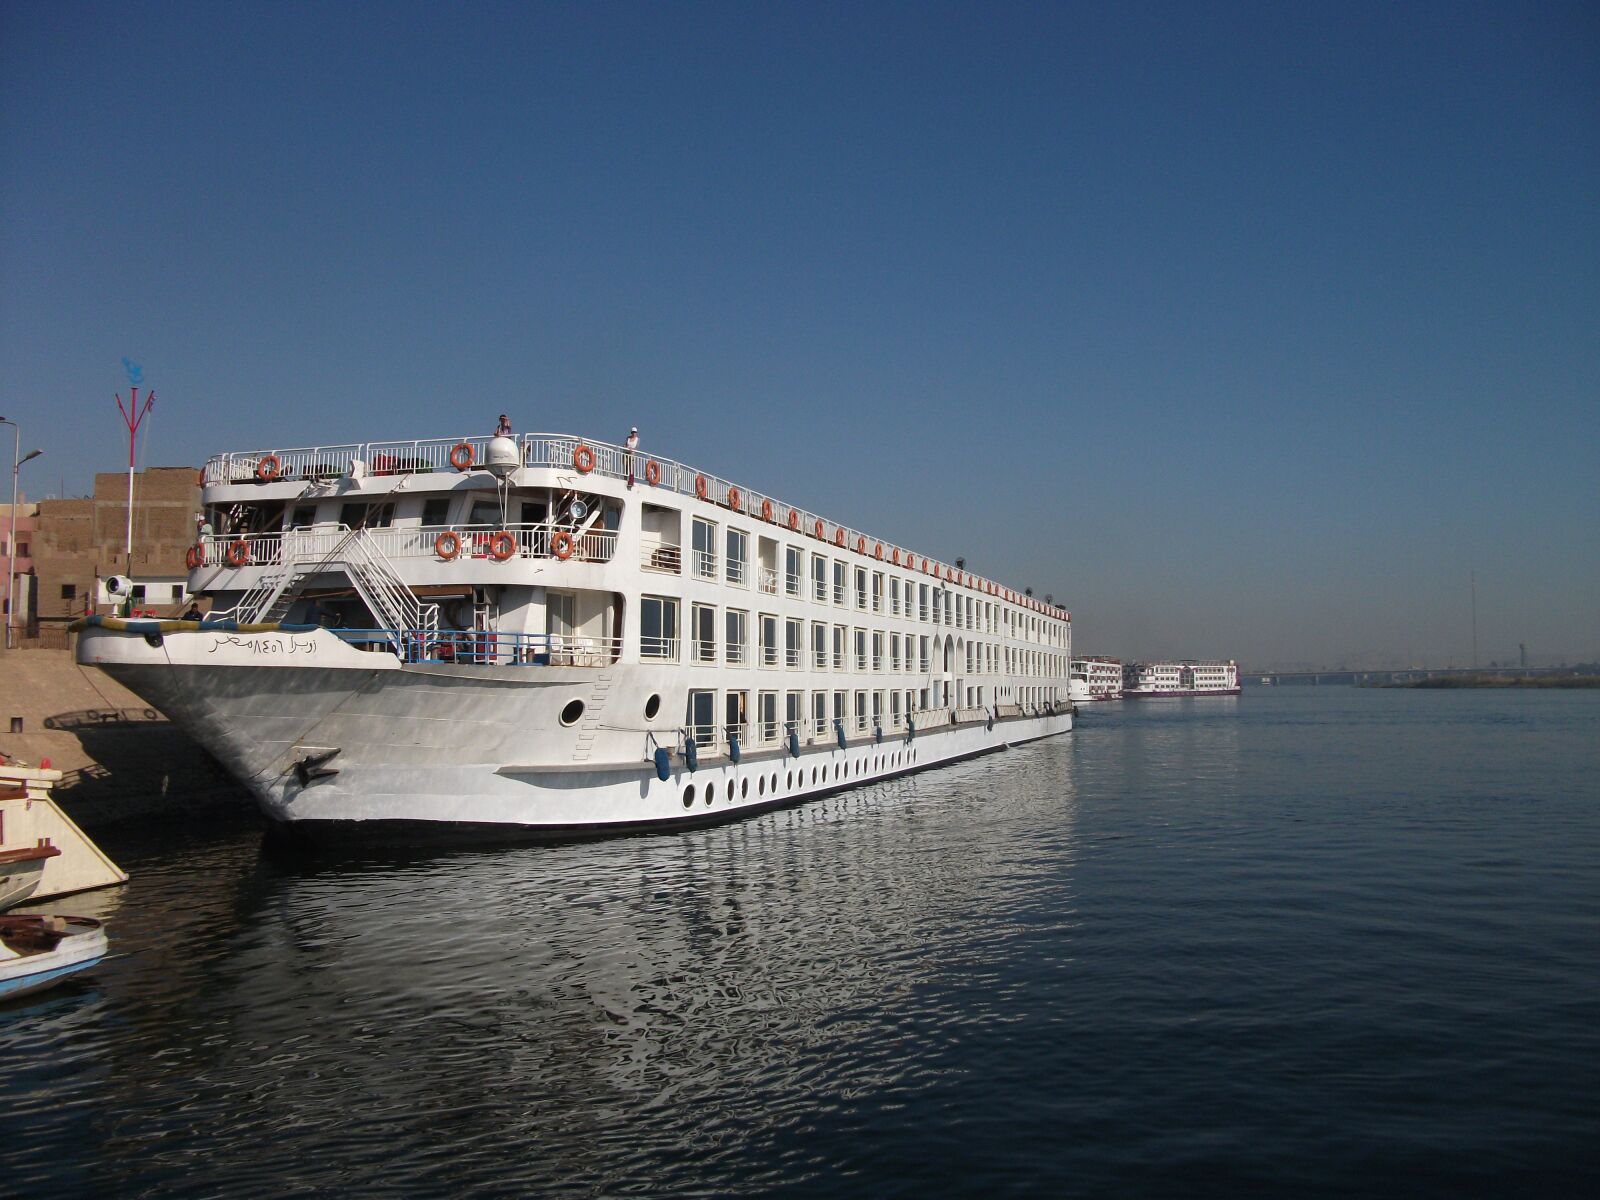 Fujifilm A220 A230 sample photo. Nile cruise, river, egypt photography